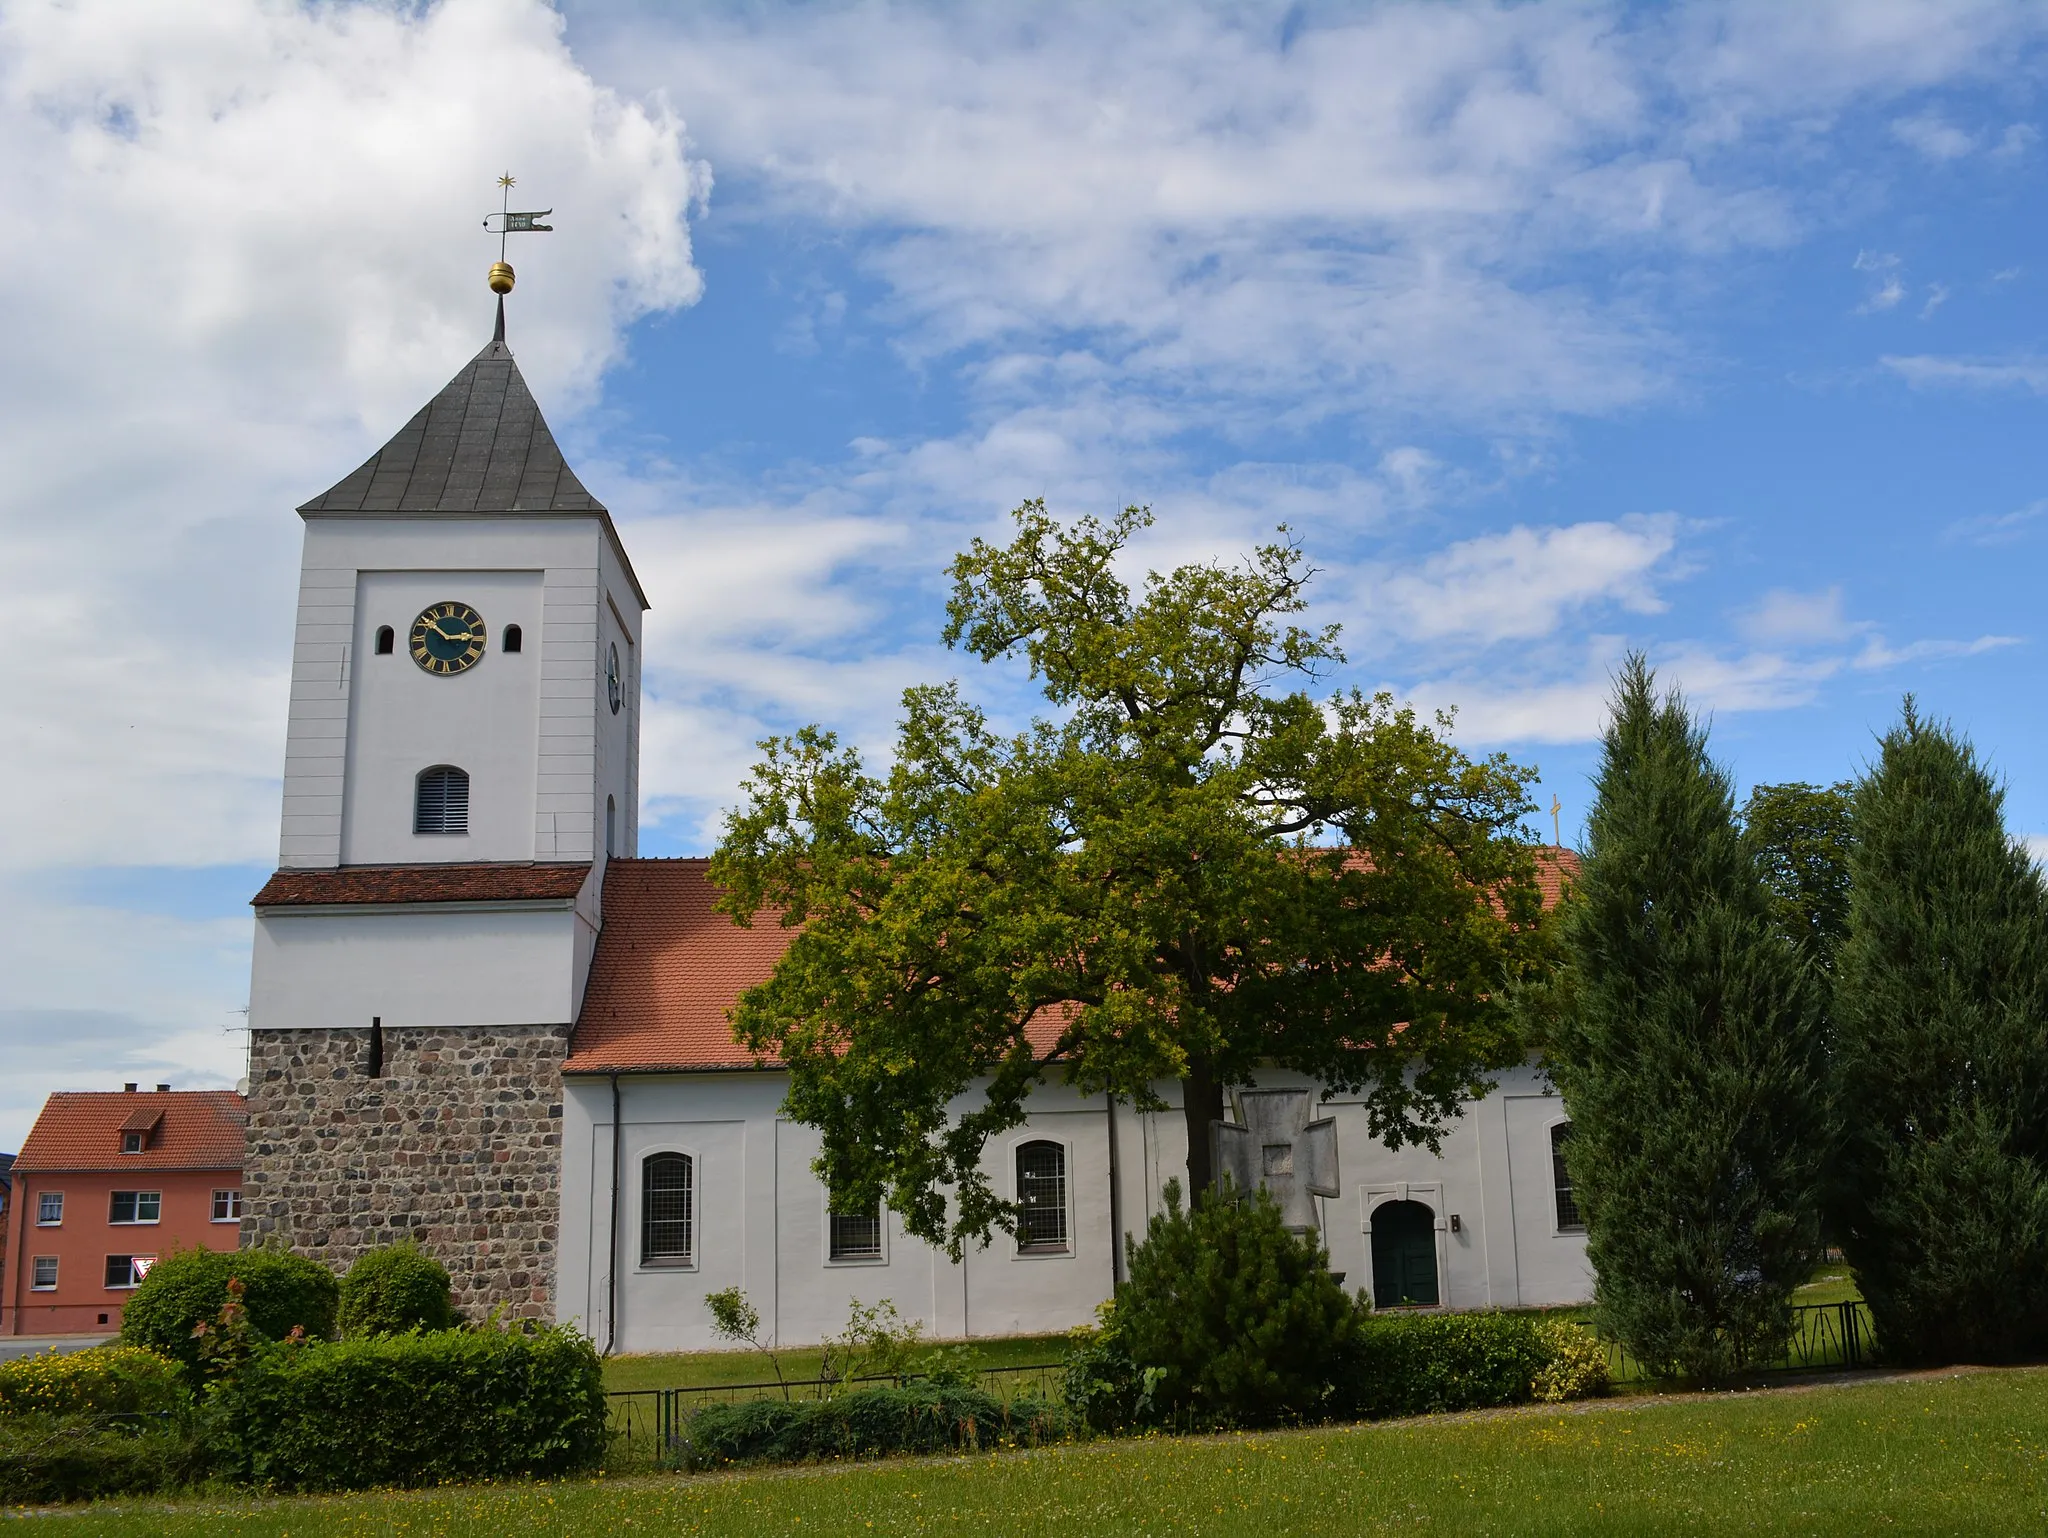 Photo showing: Denkmalgeschützte evangelische Stadtkirche in Rhinow, Landkreis Havelland, erbaut 1734-1745